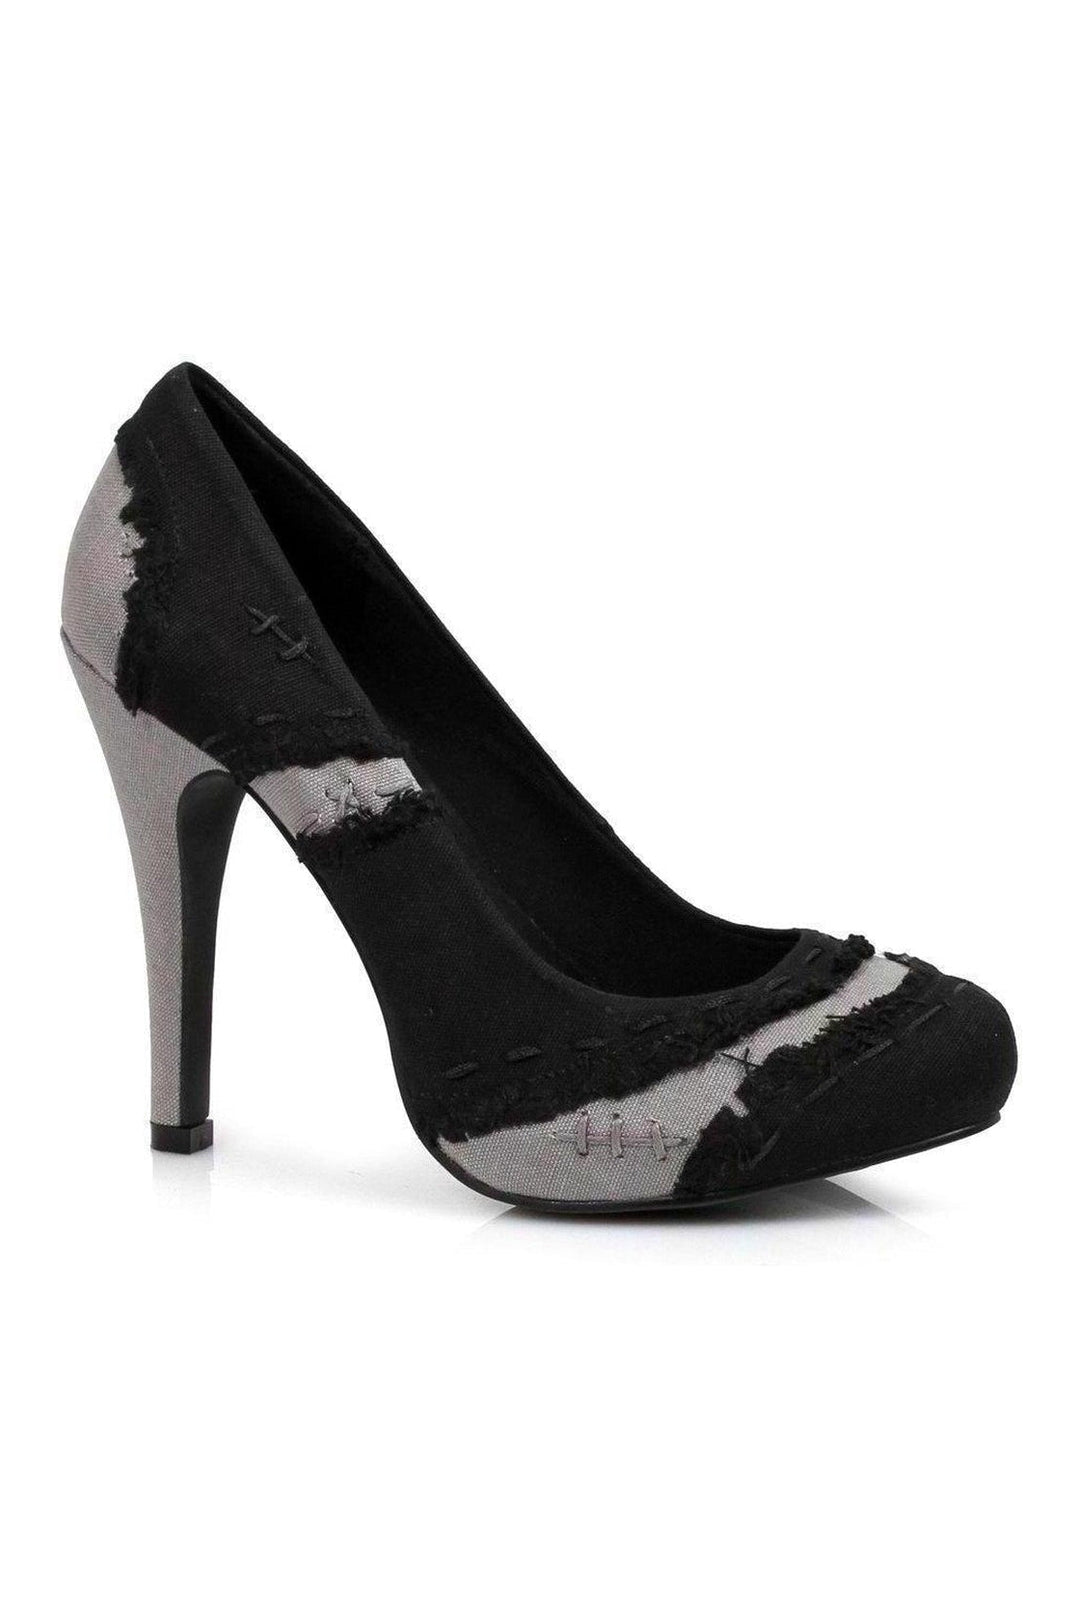 400-MUERTA Pump | Black Patent-Ellie Shoes-SEXYSHOES.COM